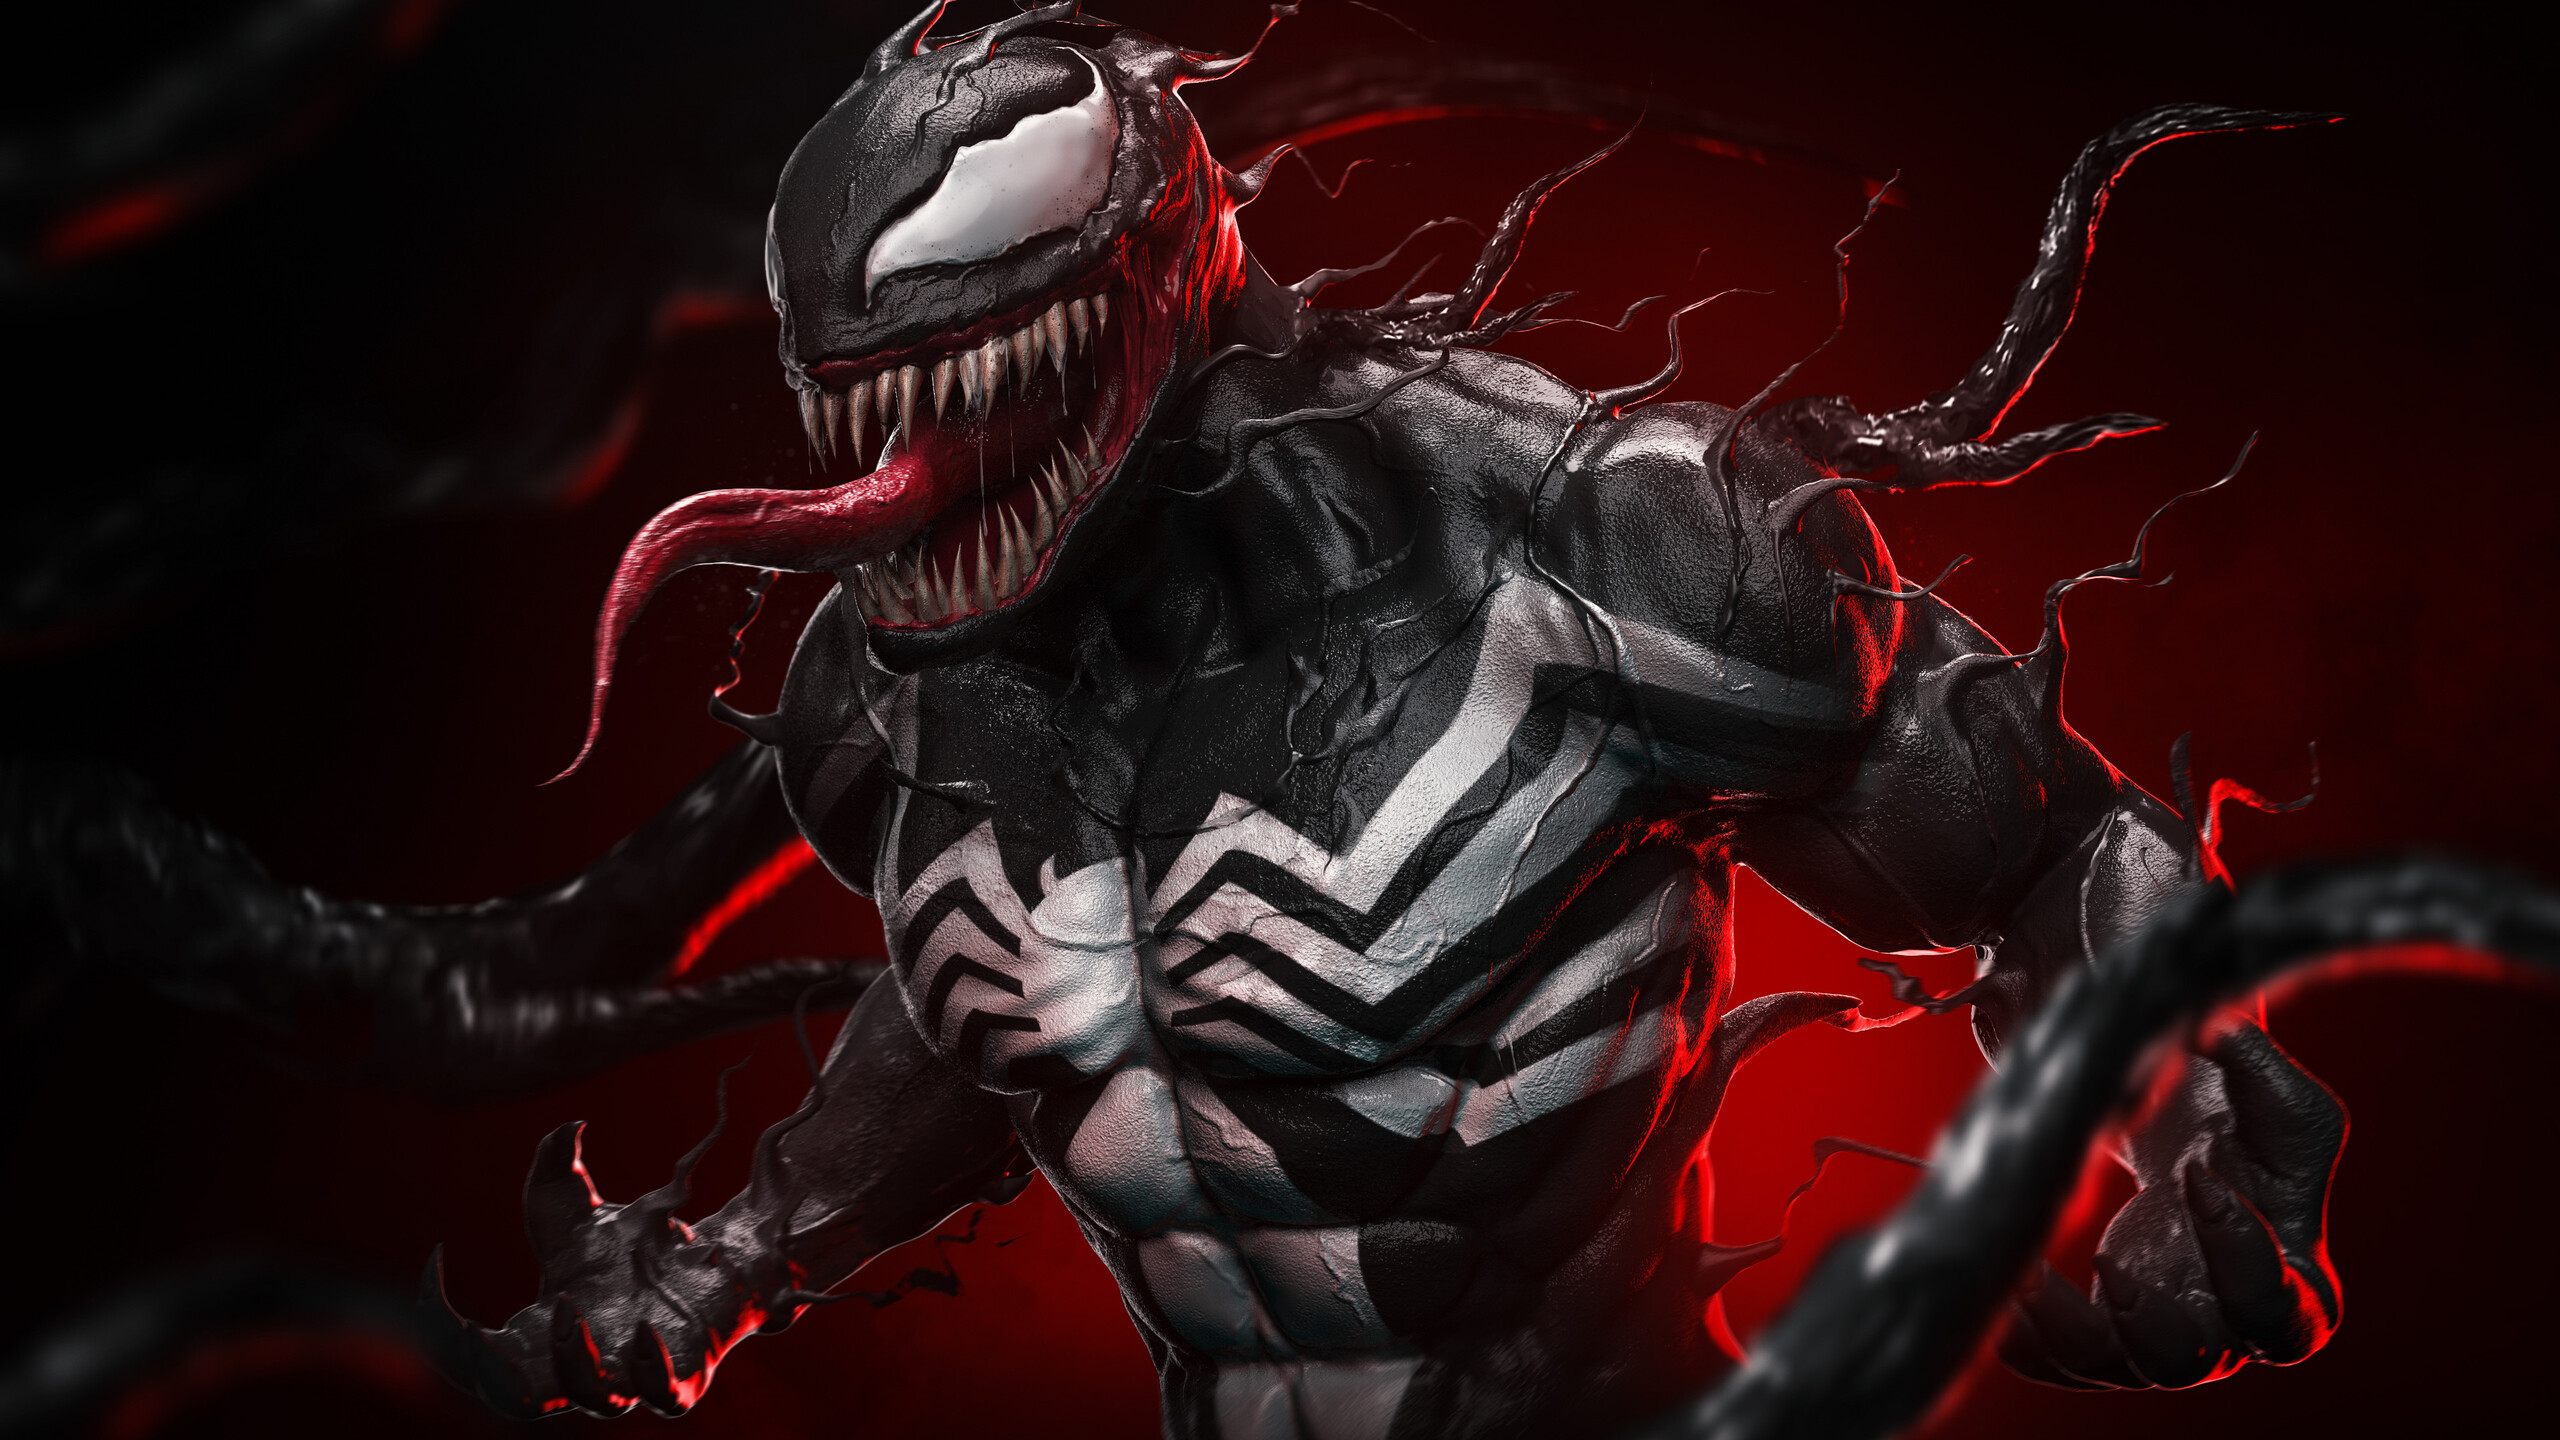 Chia sẻ bộ ảnh nền siêu ngầu của bộ phim Venom với độ phân giải Full HD  dành cho smartphone và PC  TECHRUMVN